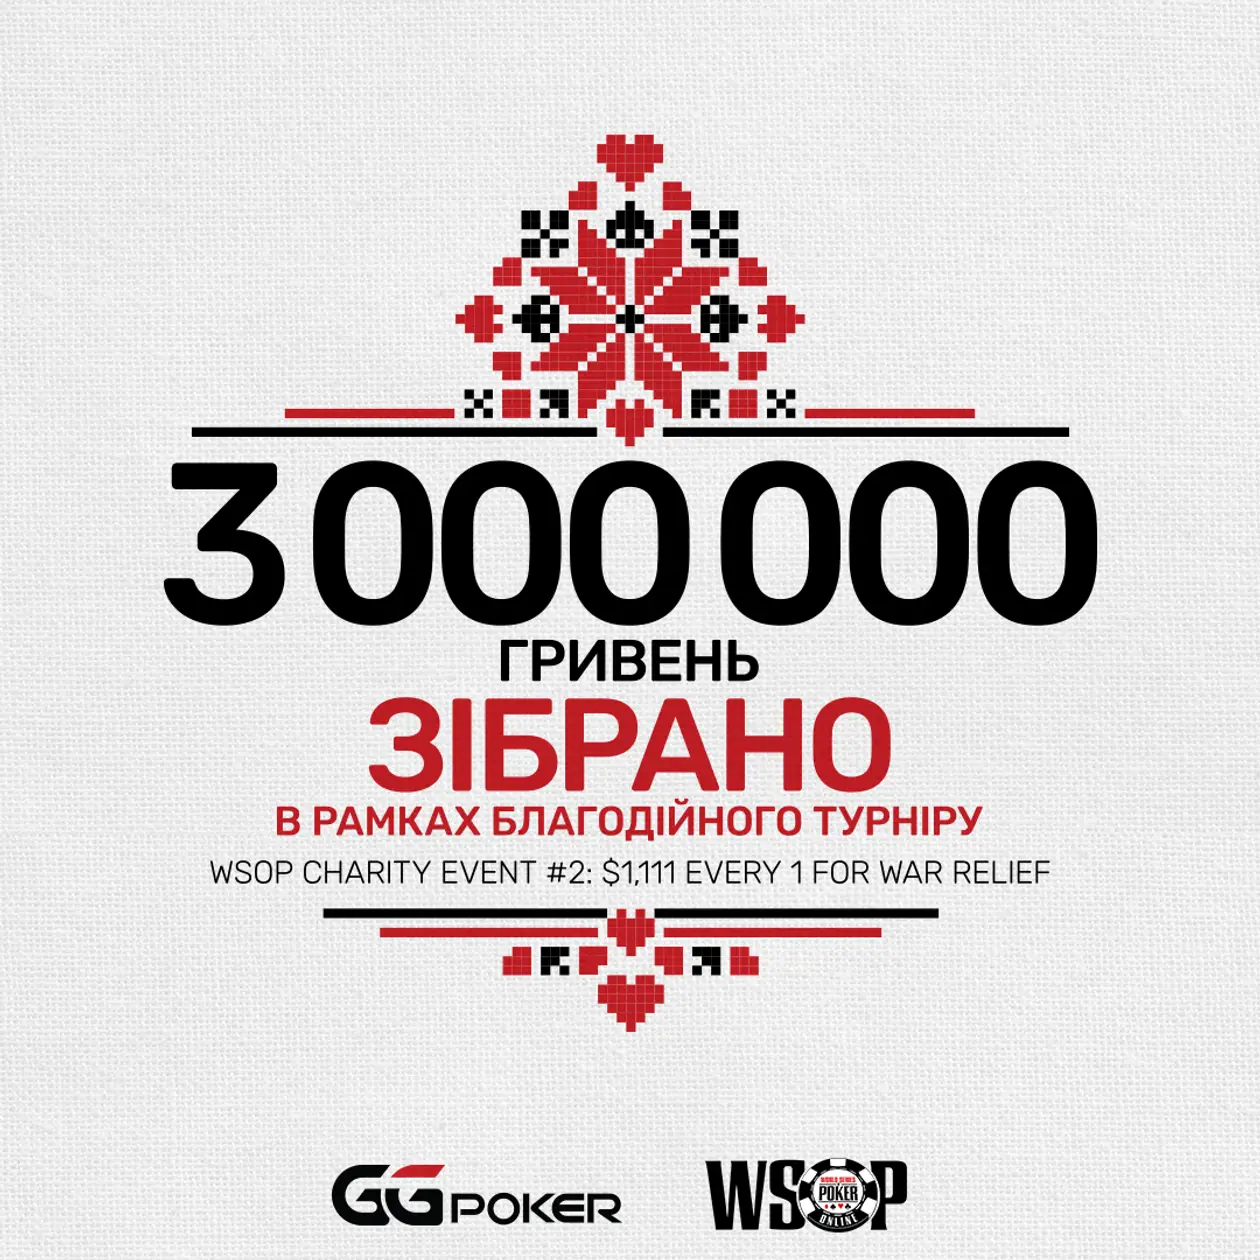 3,000,000 гривень на підтримку українців буде перераховано найбільшим світовим покер-румом GGPoker. 